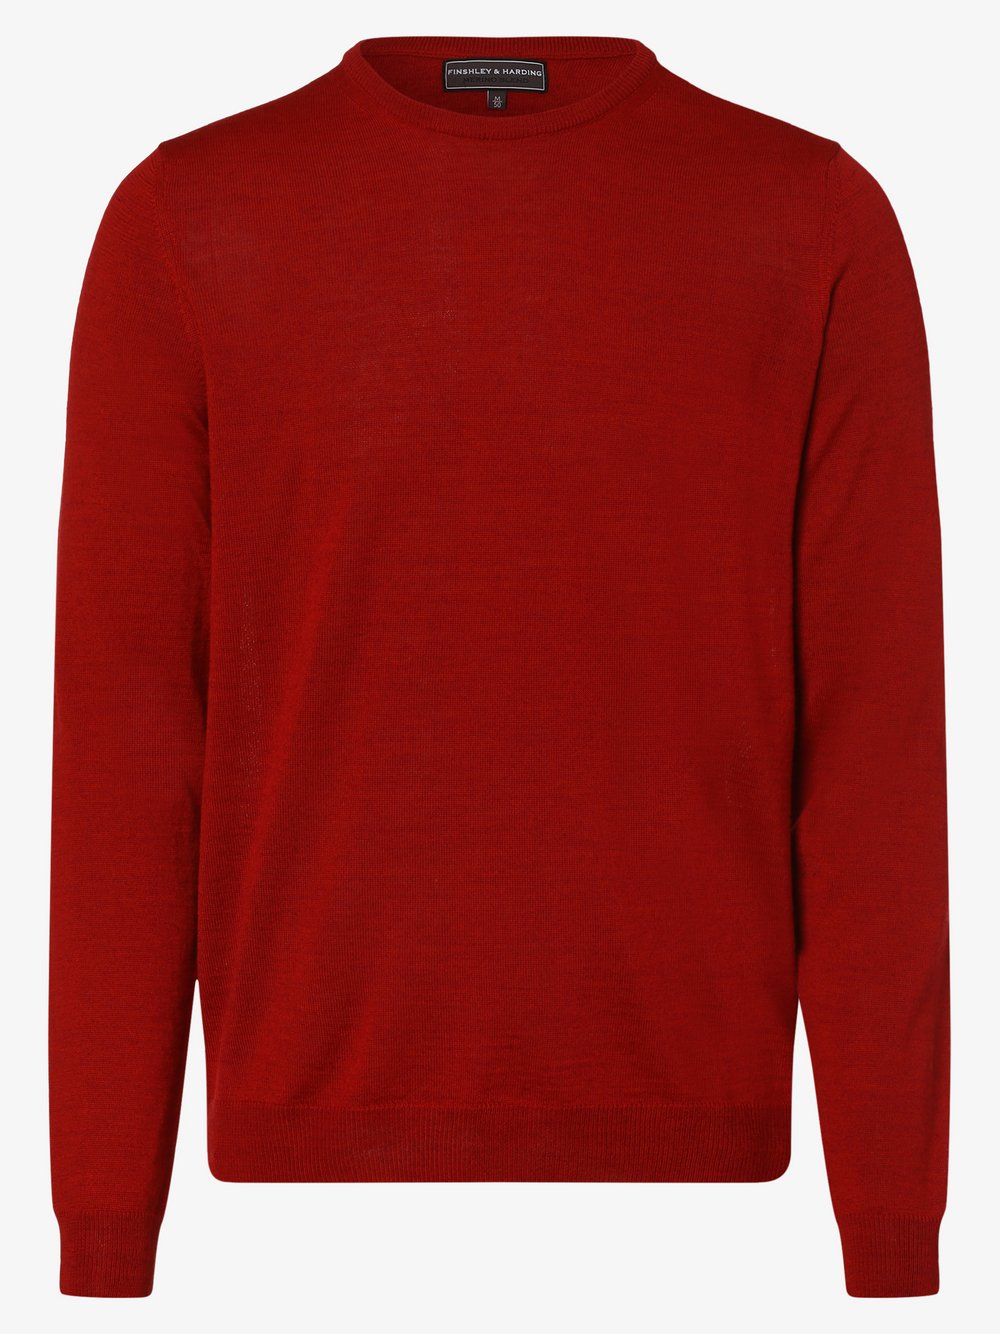 Finshley & Harding - Sweter męski, czerwony